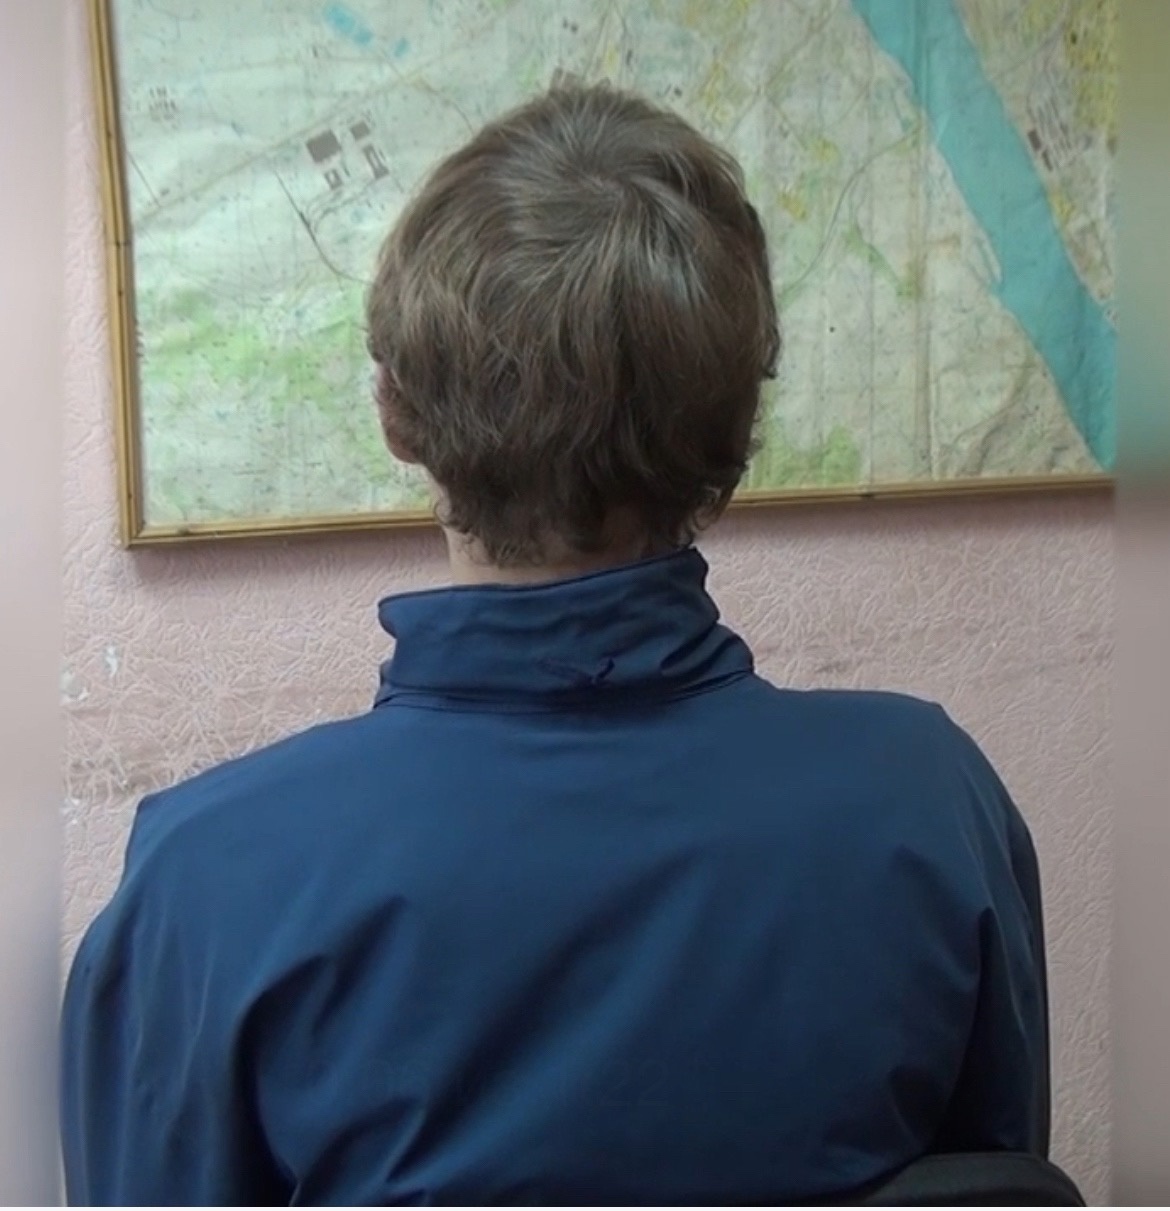 16-летнего костромского пранкера поставили на учет после его выходок